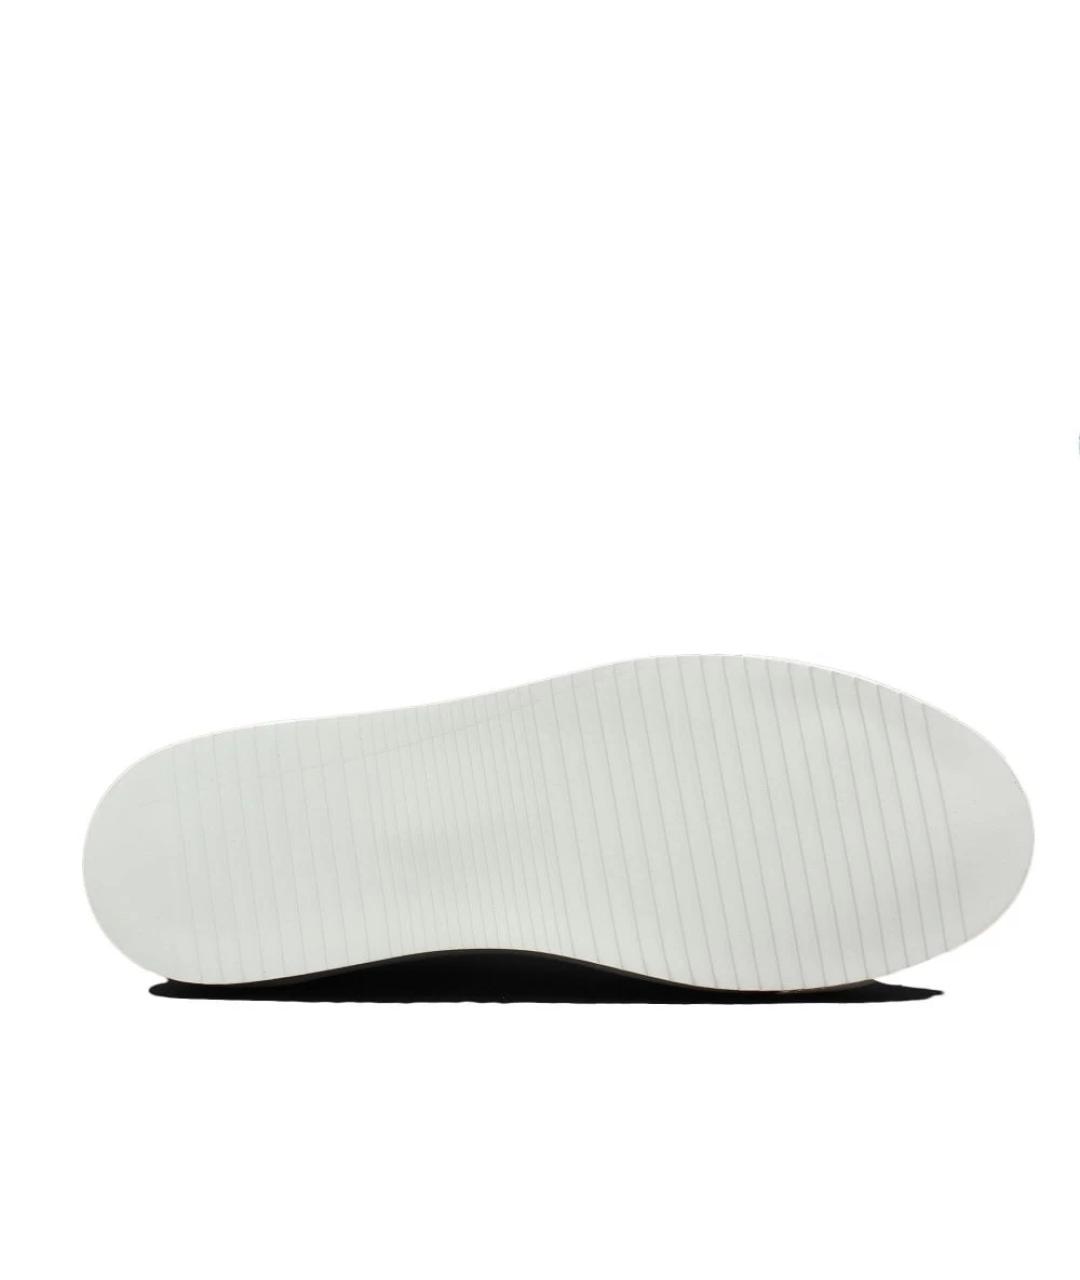 AXEL ARIGATO Белые низкие кроссовки / кеды, фото 2